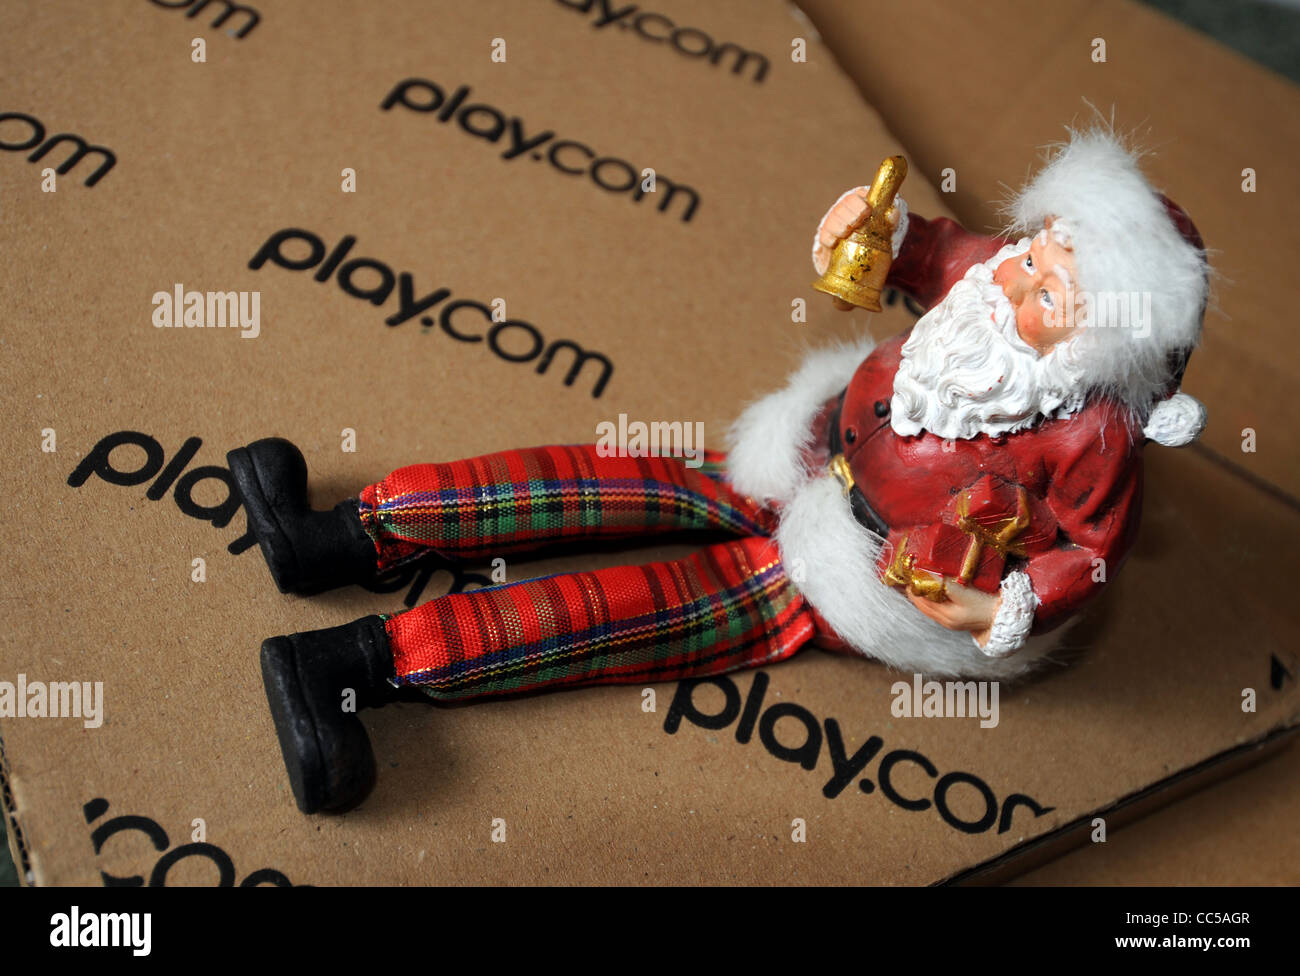 Online Einkaufen bei Play.com zu Weihnachten, UK Stockfoto